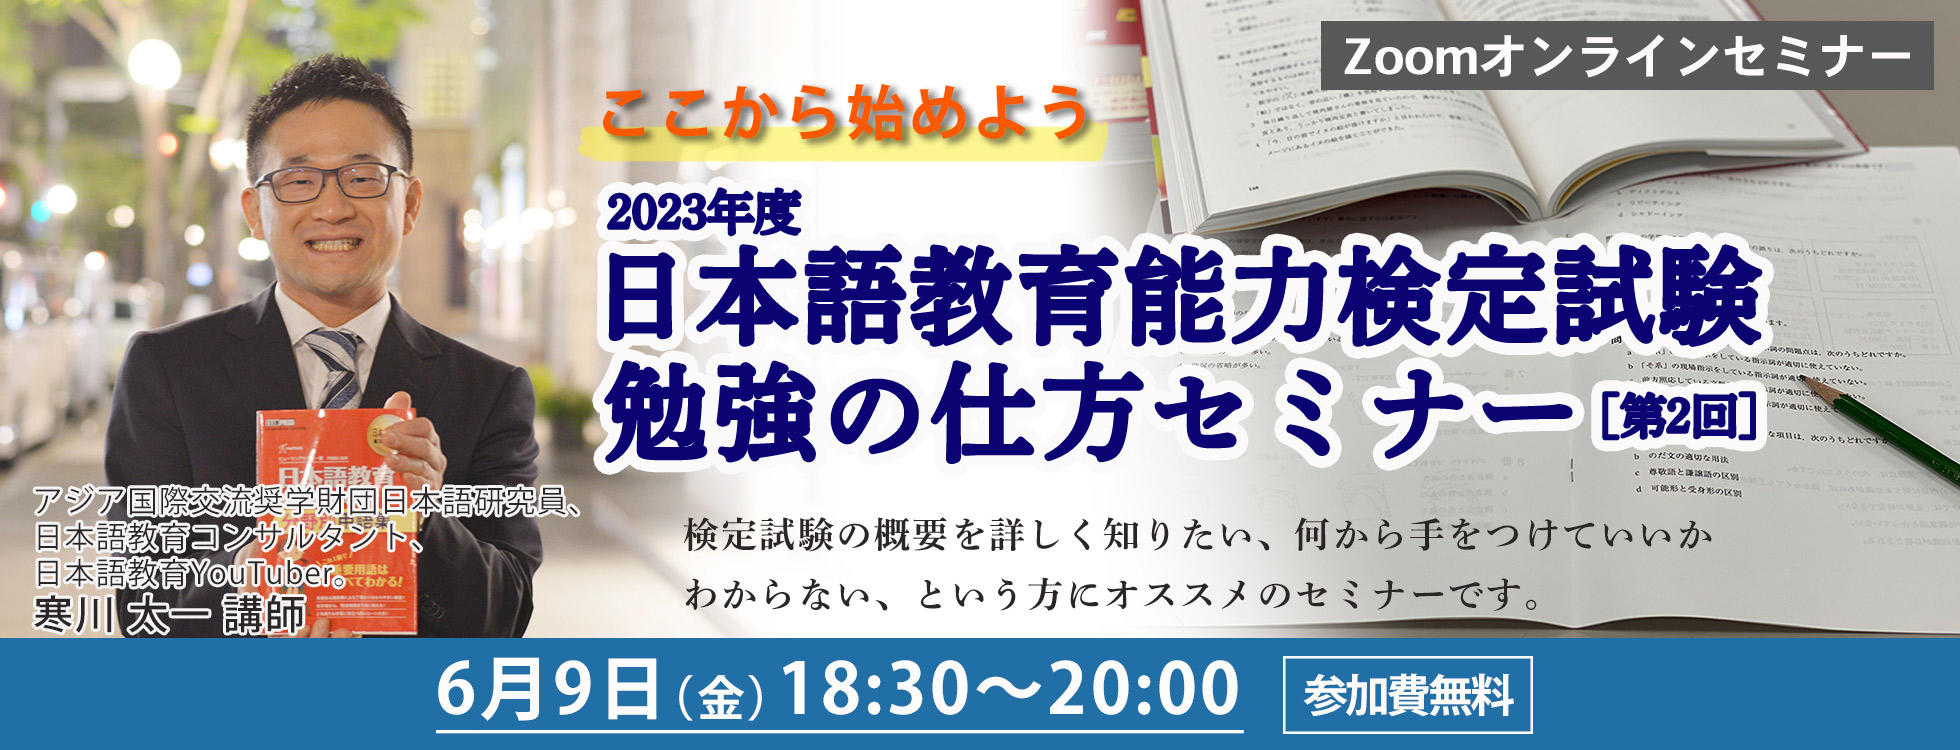 2023年度 「日本語教育能力検定試験」の合格に向けて【勉強の仕方セミナー】第2回